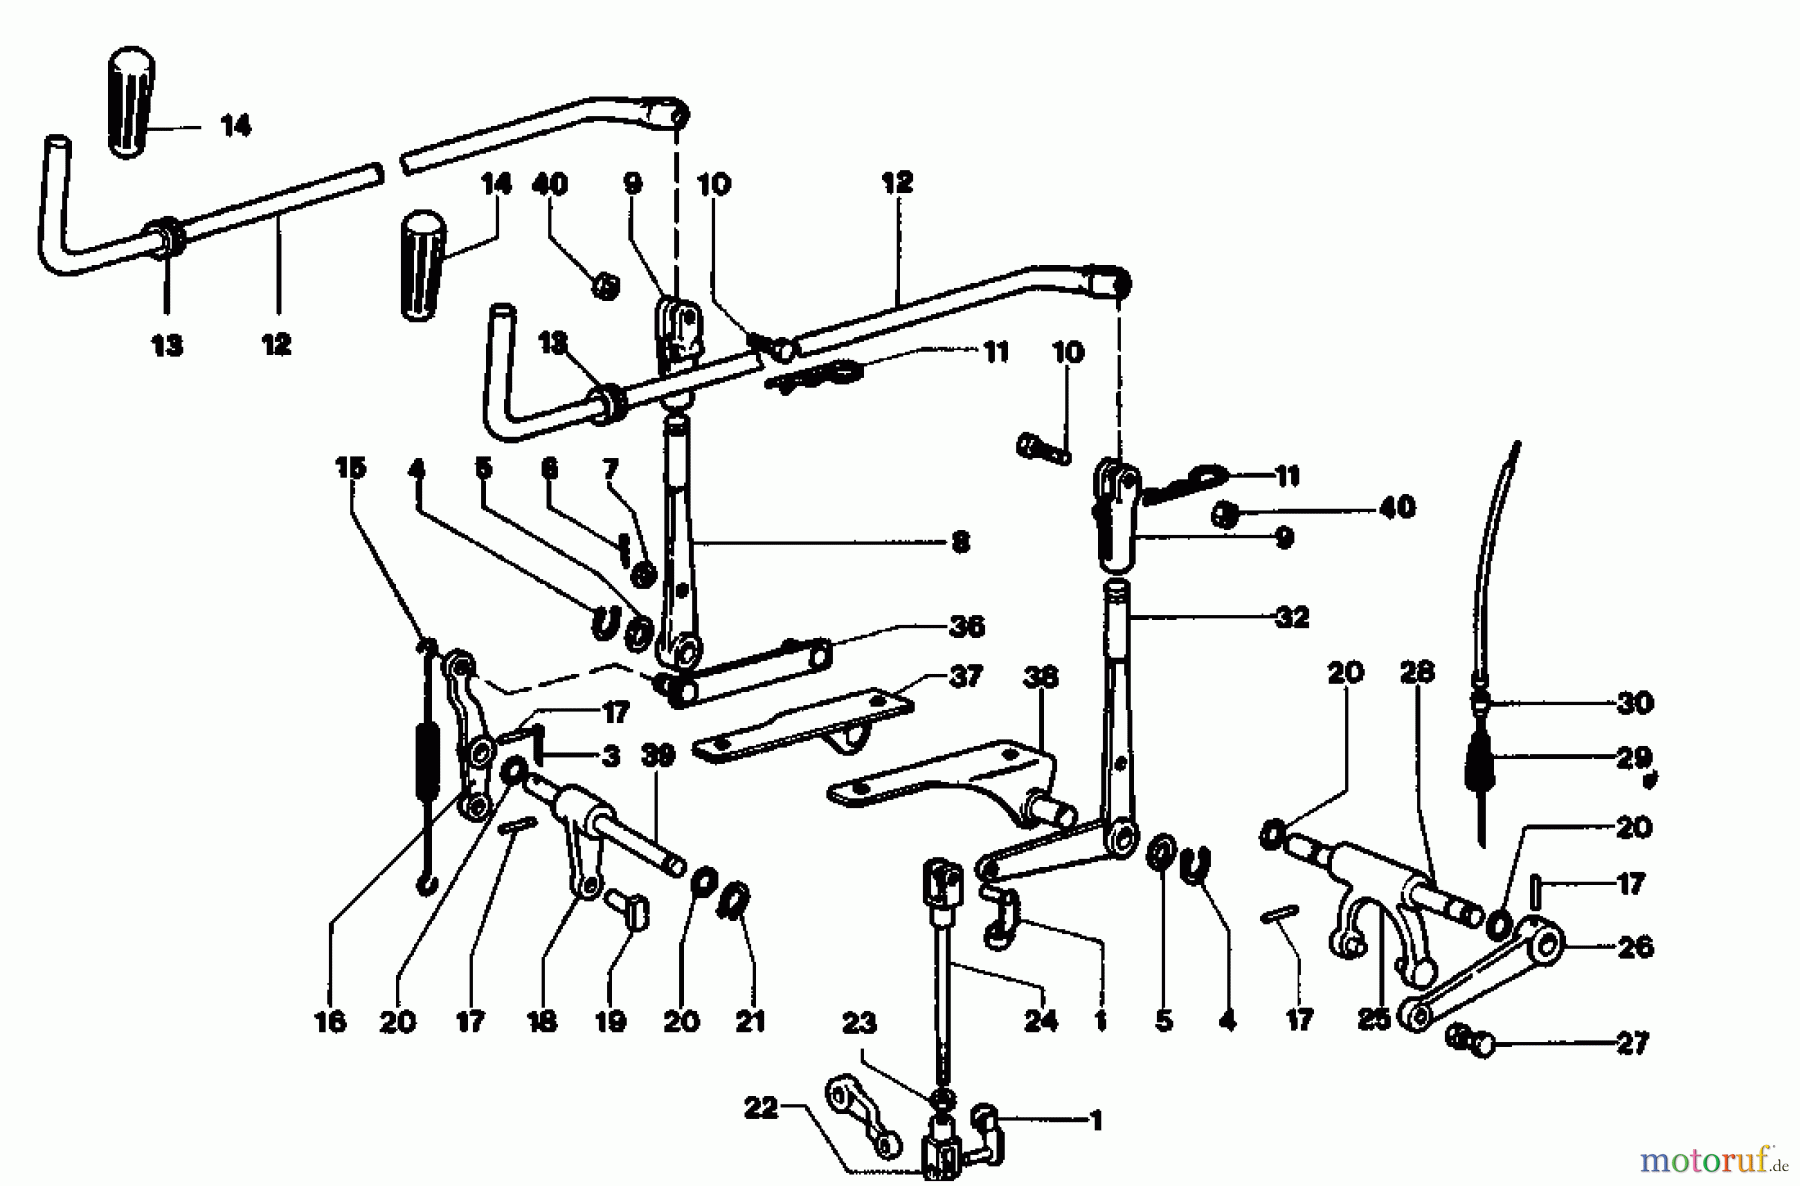  Gutbrod Cutter bar mower BM 110 07517.01  (1992) Controls